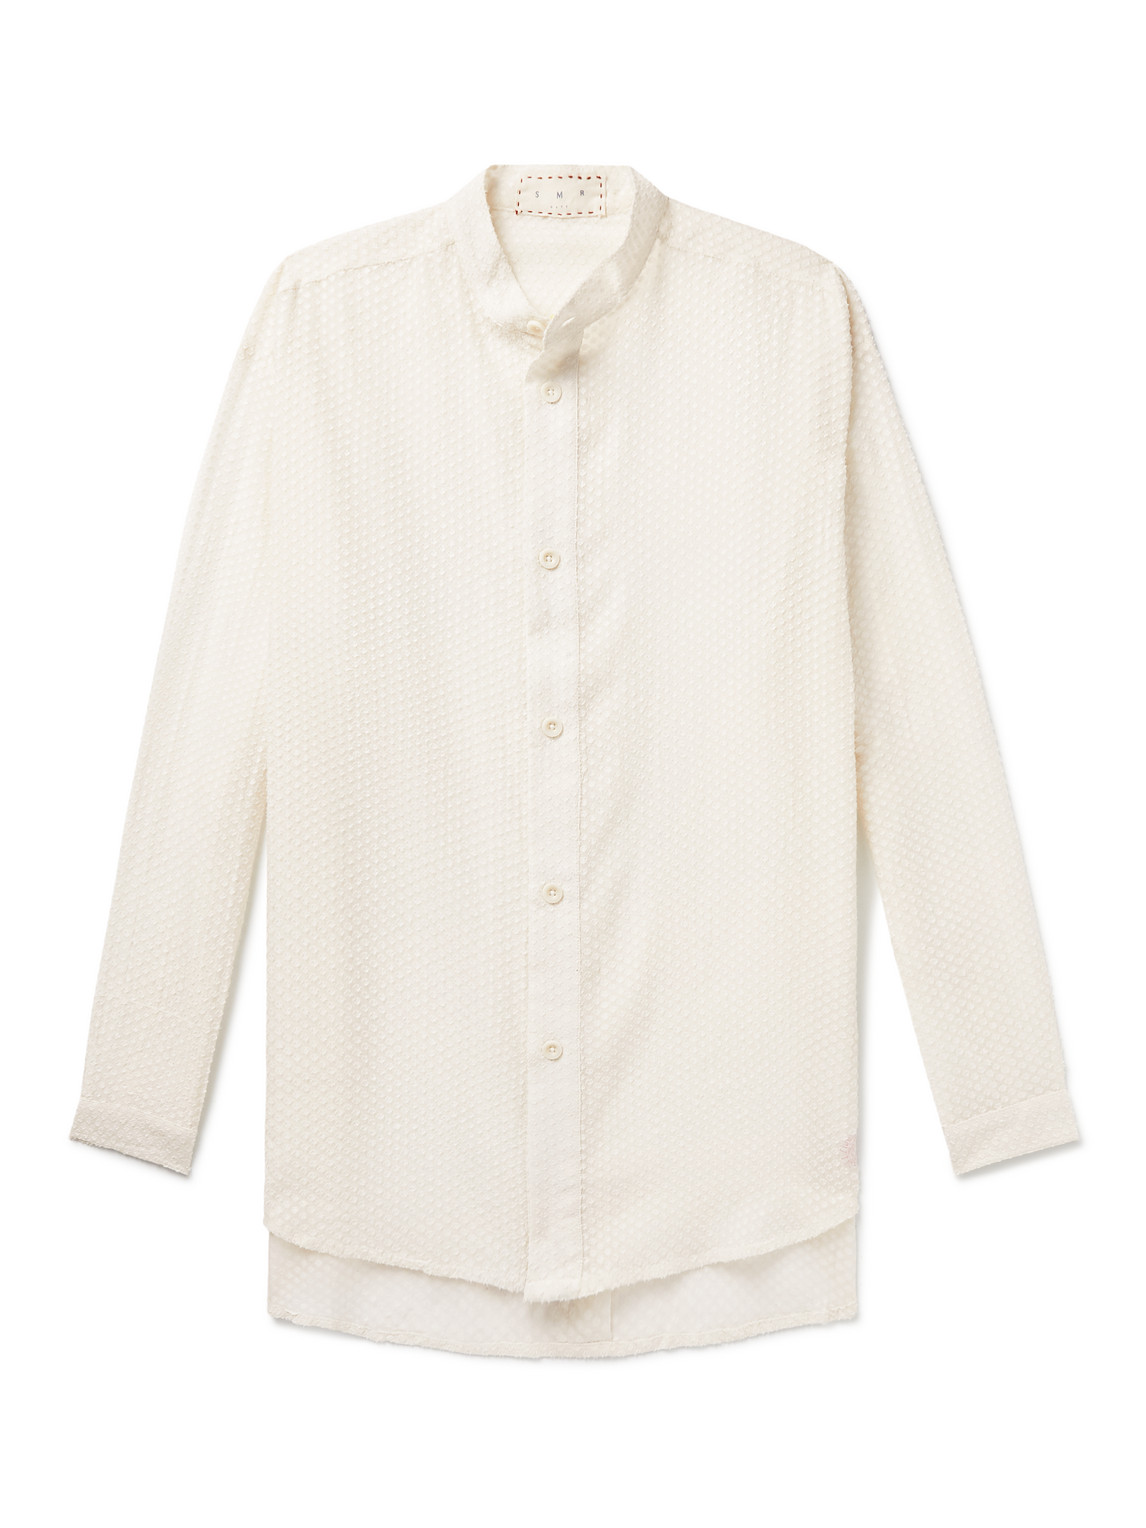 Tulum Grandad-Collar Fil-Coupé Cotton Shirt